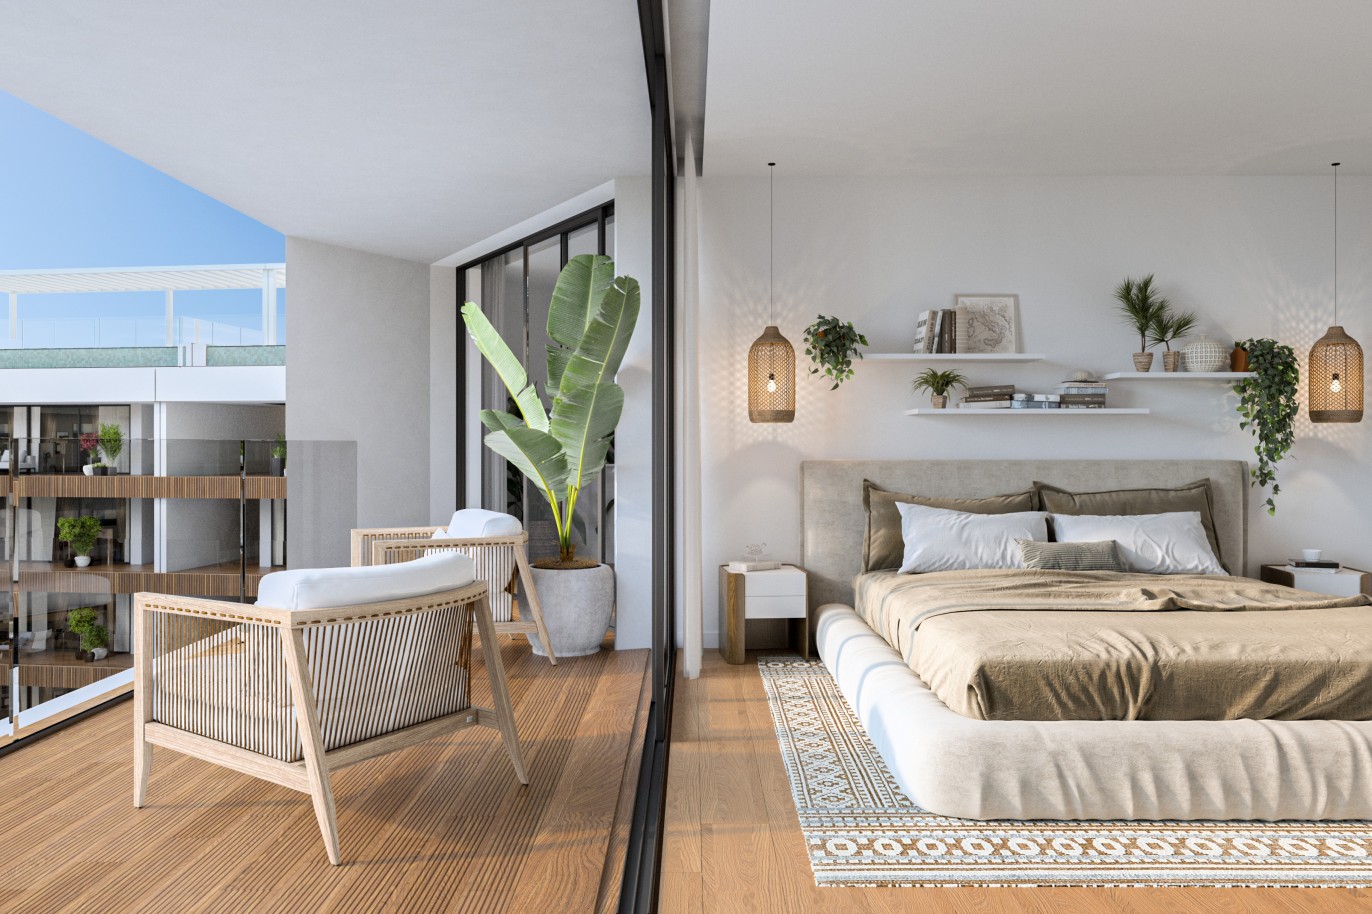 Appartements neufs avec vue sur mer, 1, 2 & 3 chambres, à vendre à Olhão, Algarve_248746